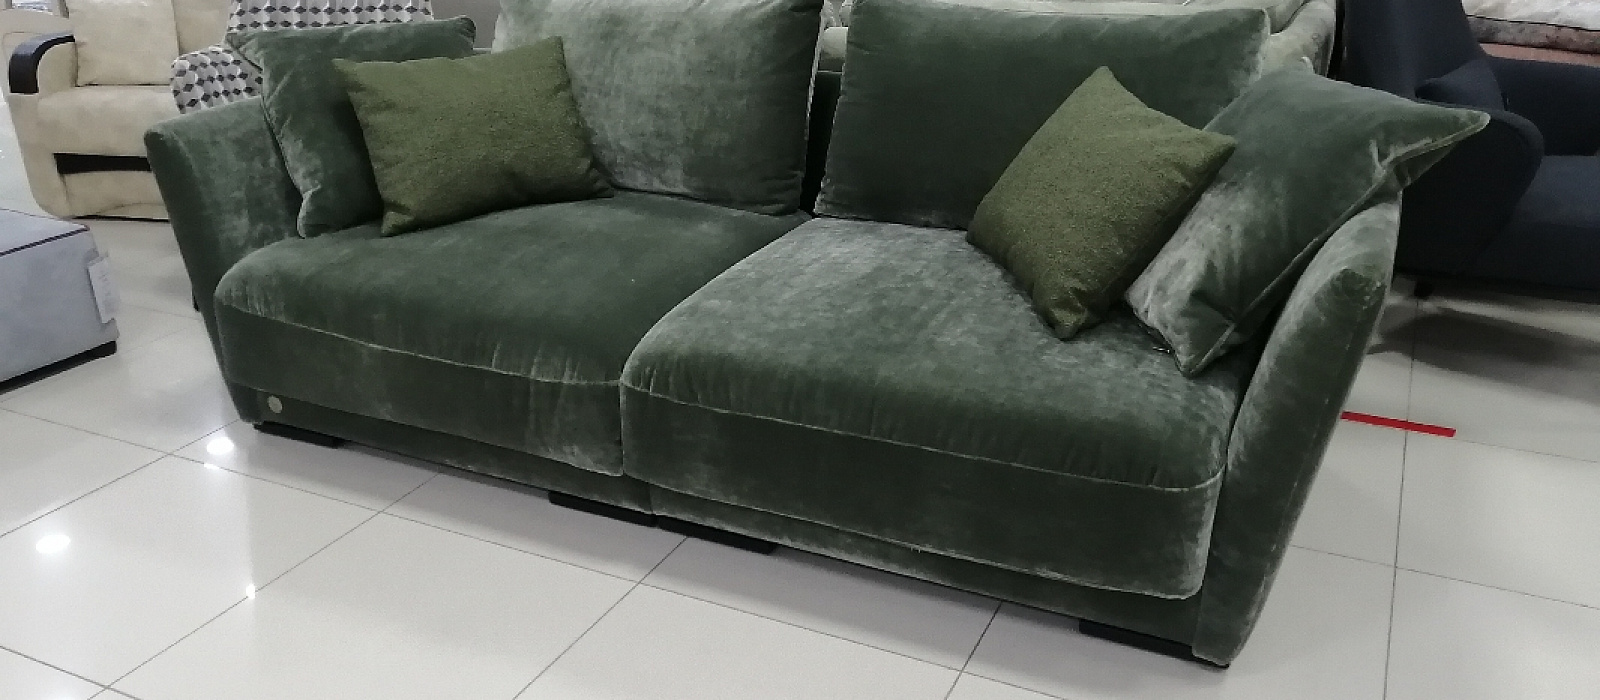 Купить Дижон диван в интернет магазине Anderssen - изображение 1